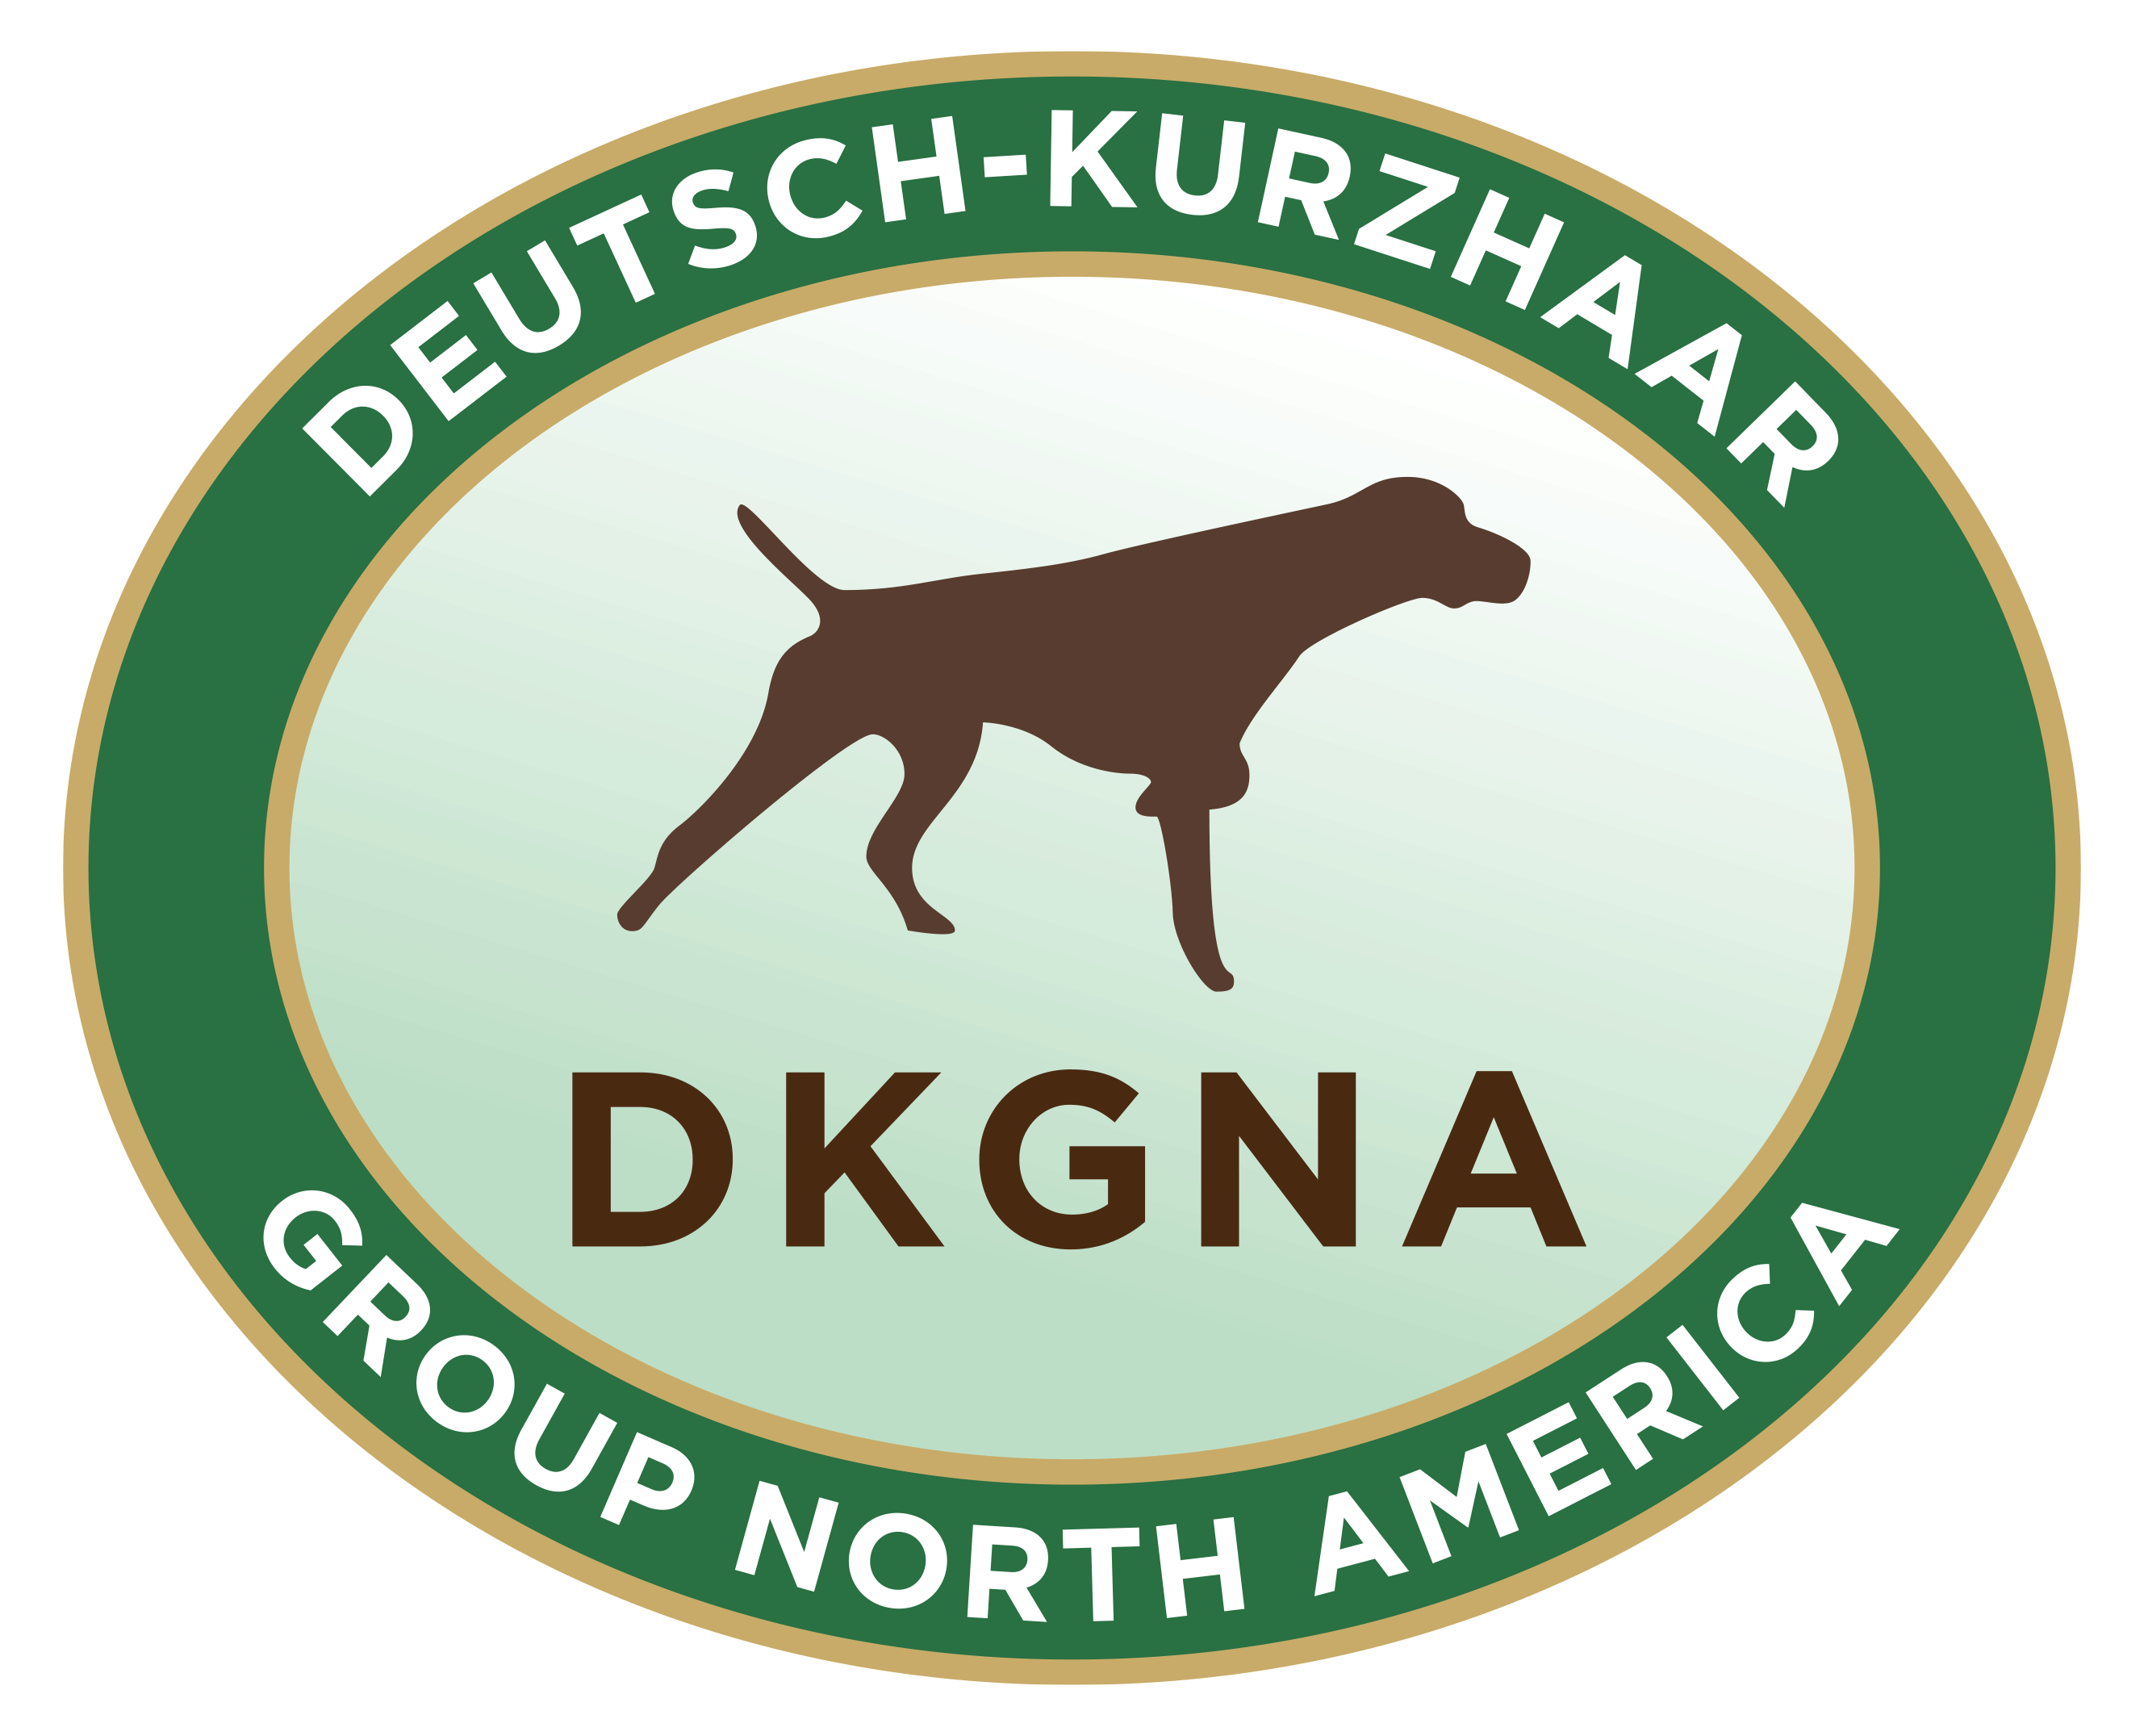 Deutsch-Kurzhaar Group North America